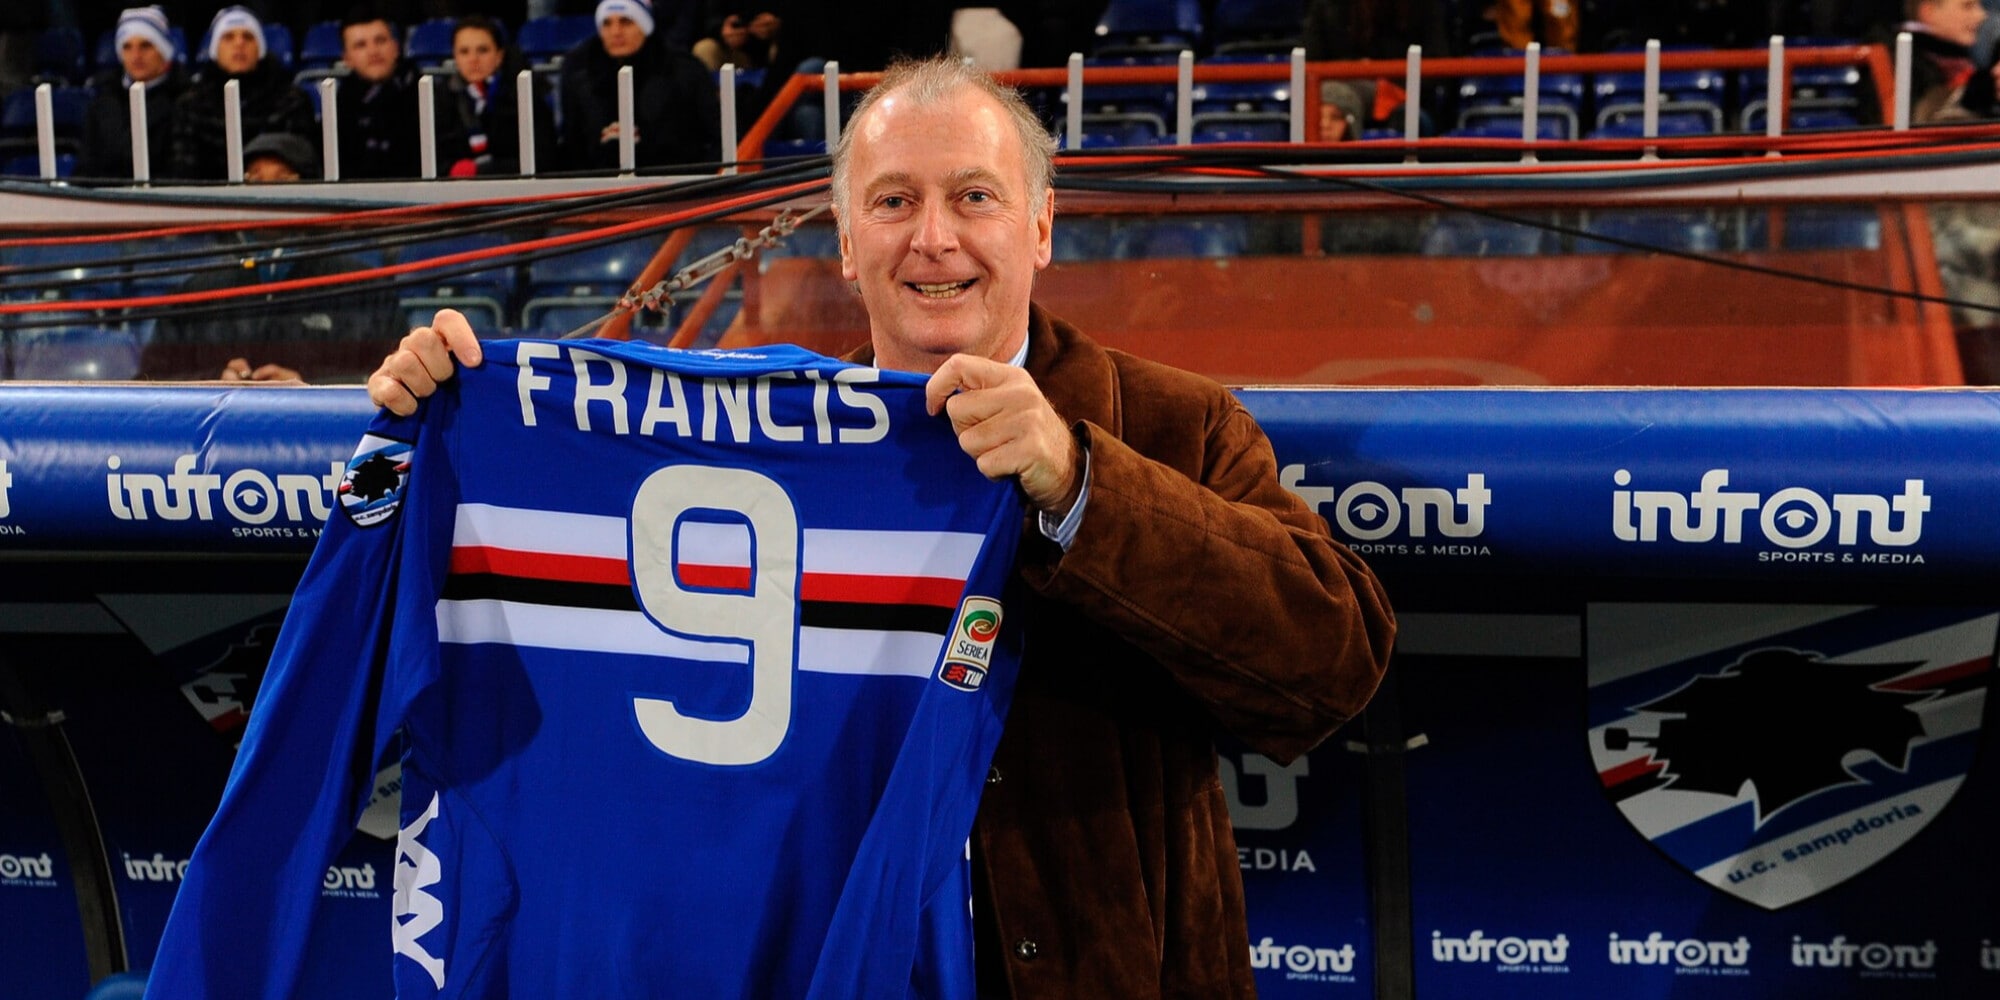 Addio a Trevor Francis: fu il centravanti della Sampdoria e del Nottingham Forrest